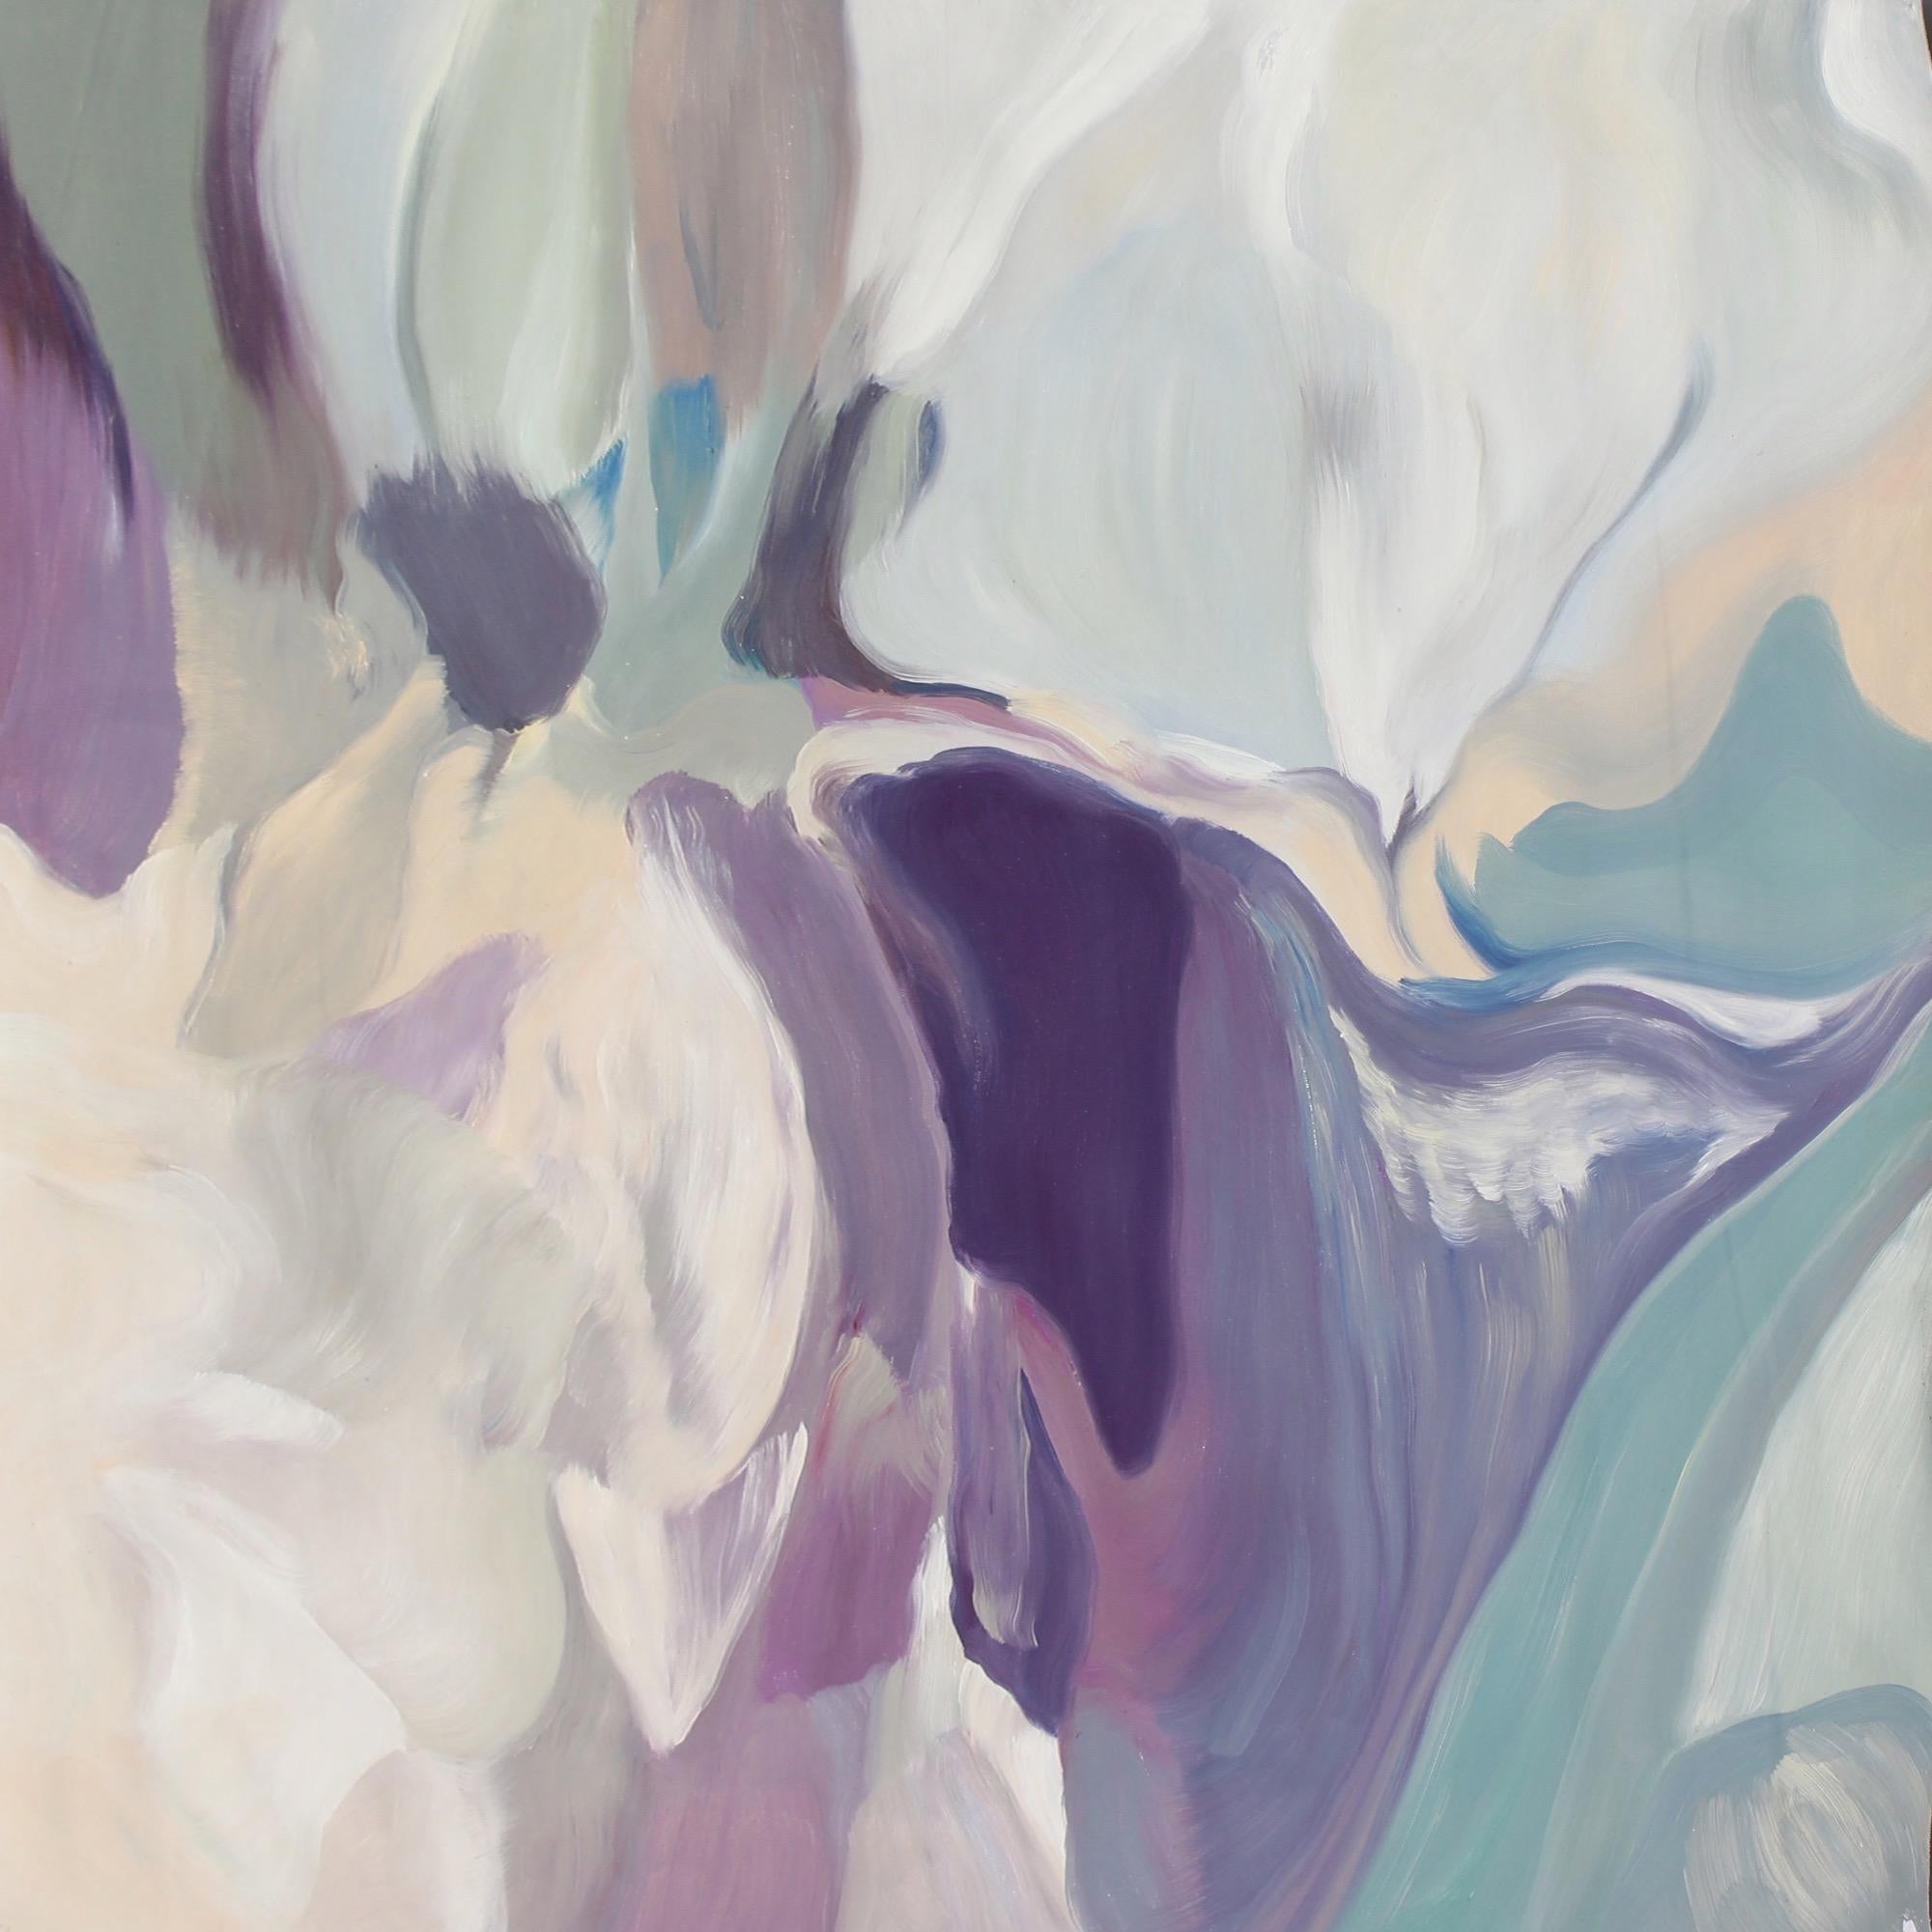 Huile abstraite bleu violet sur toile tendue
38 x 38" pouces


SPÉCIFICATIONS :

- Toile d'art
- Tendu professionnellement à la main sur des barres de bois tendues de 1" de profondeur.
- Tirage et emballage de la galerie (image recouvrant les bords